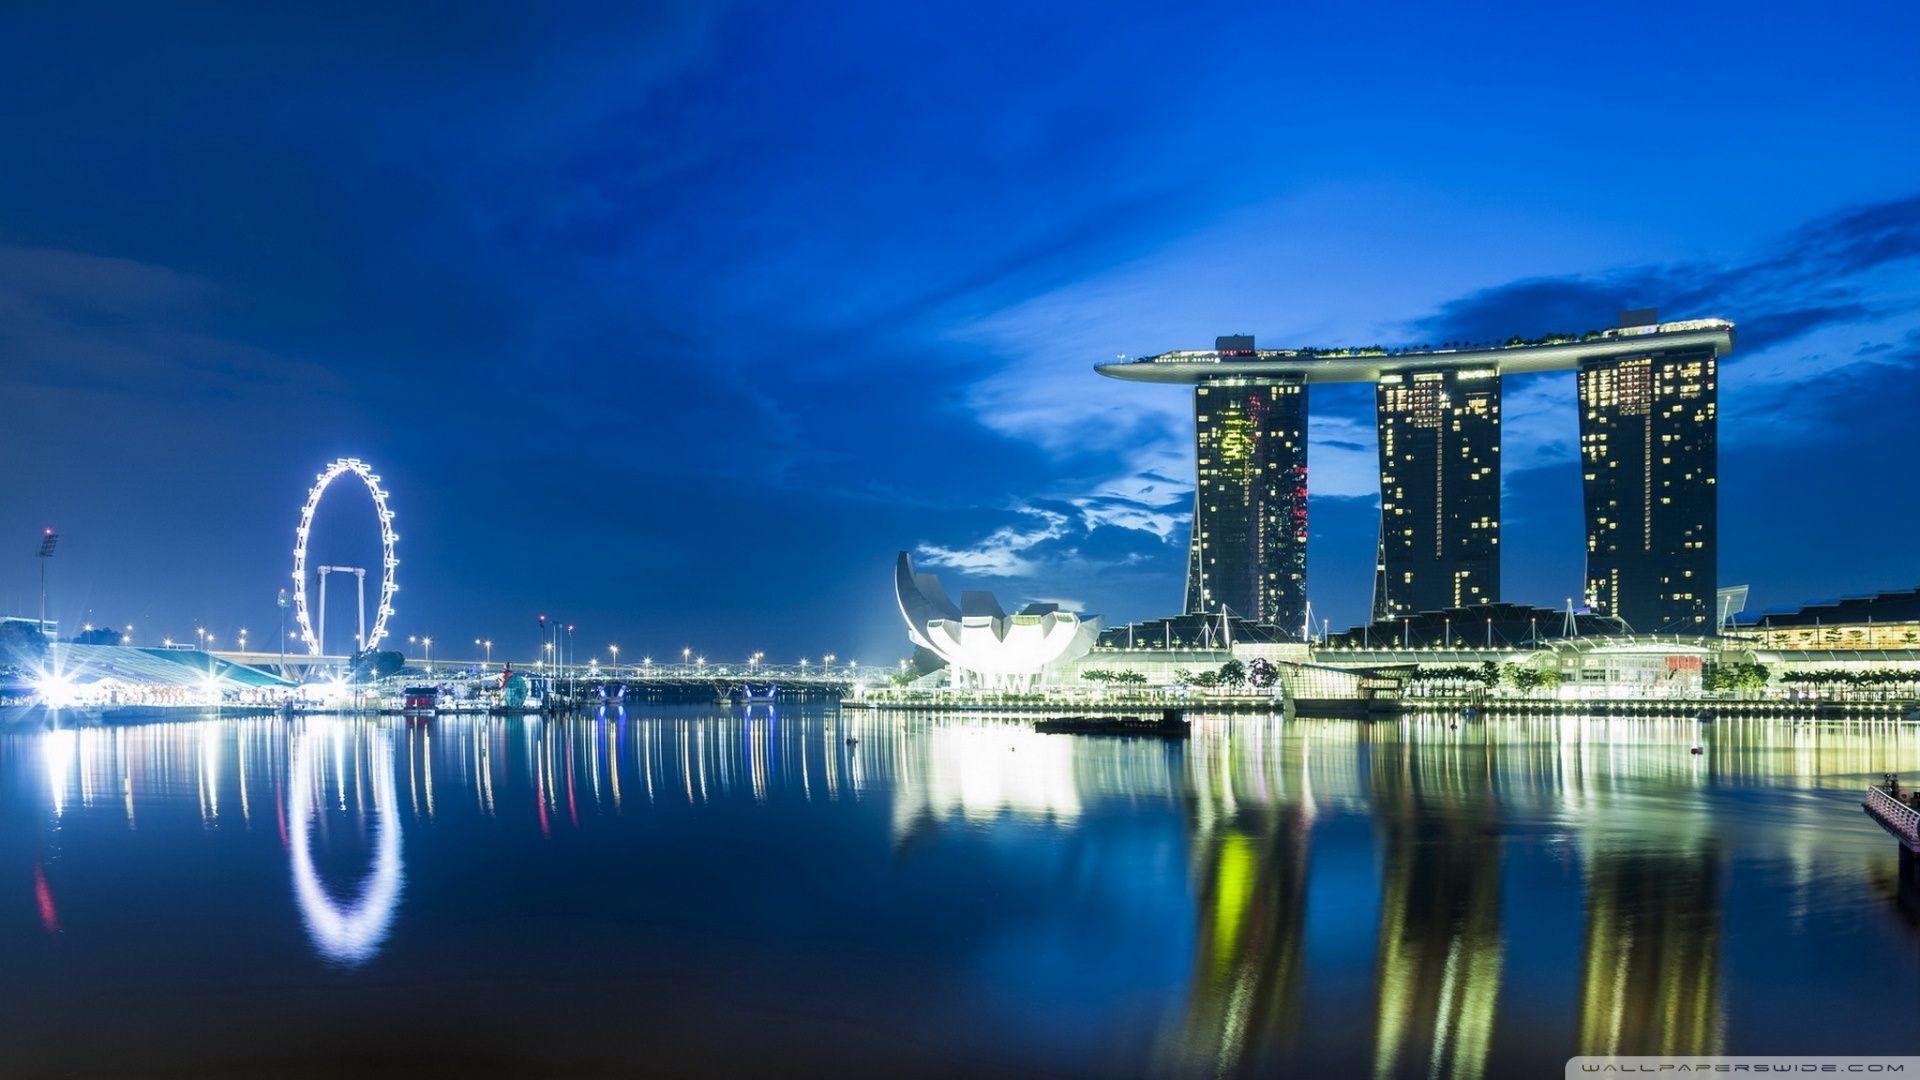 Singapore Skyline HD desktop wallpaper, Widescreen, High